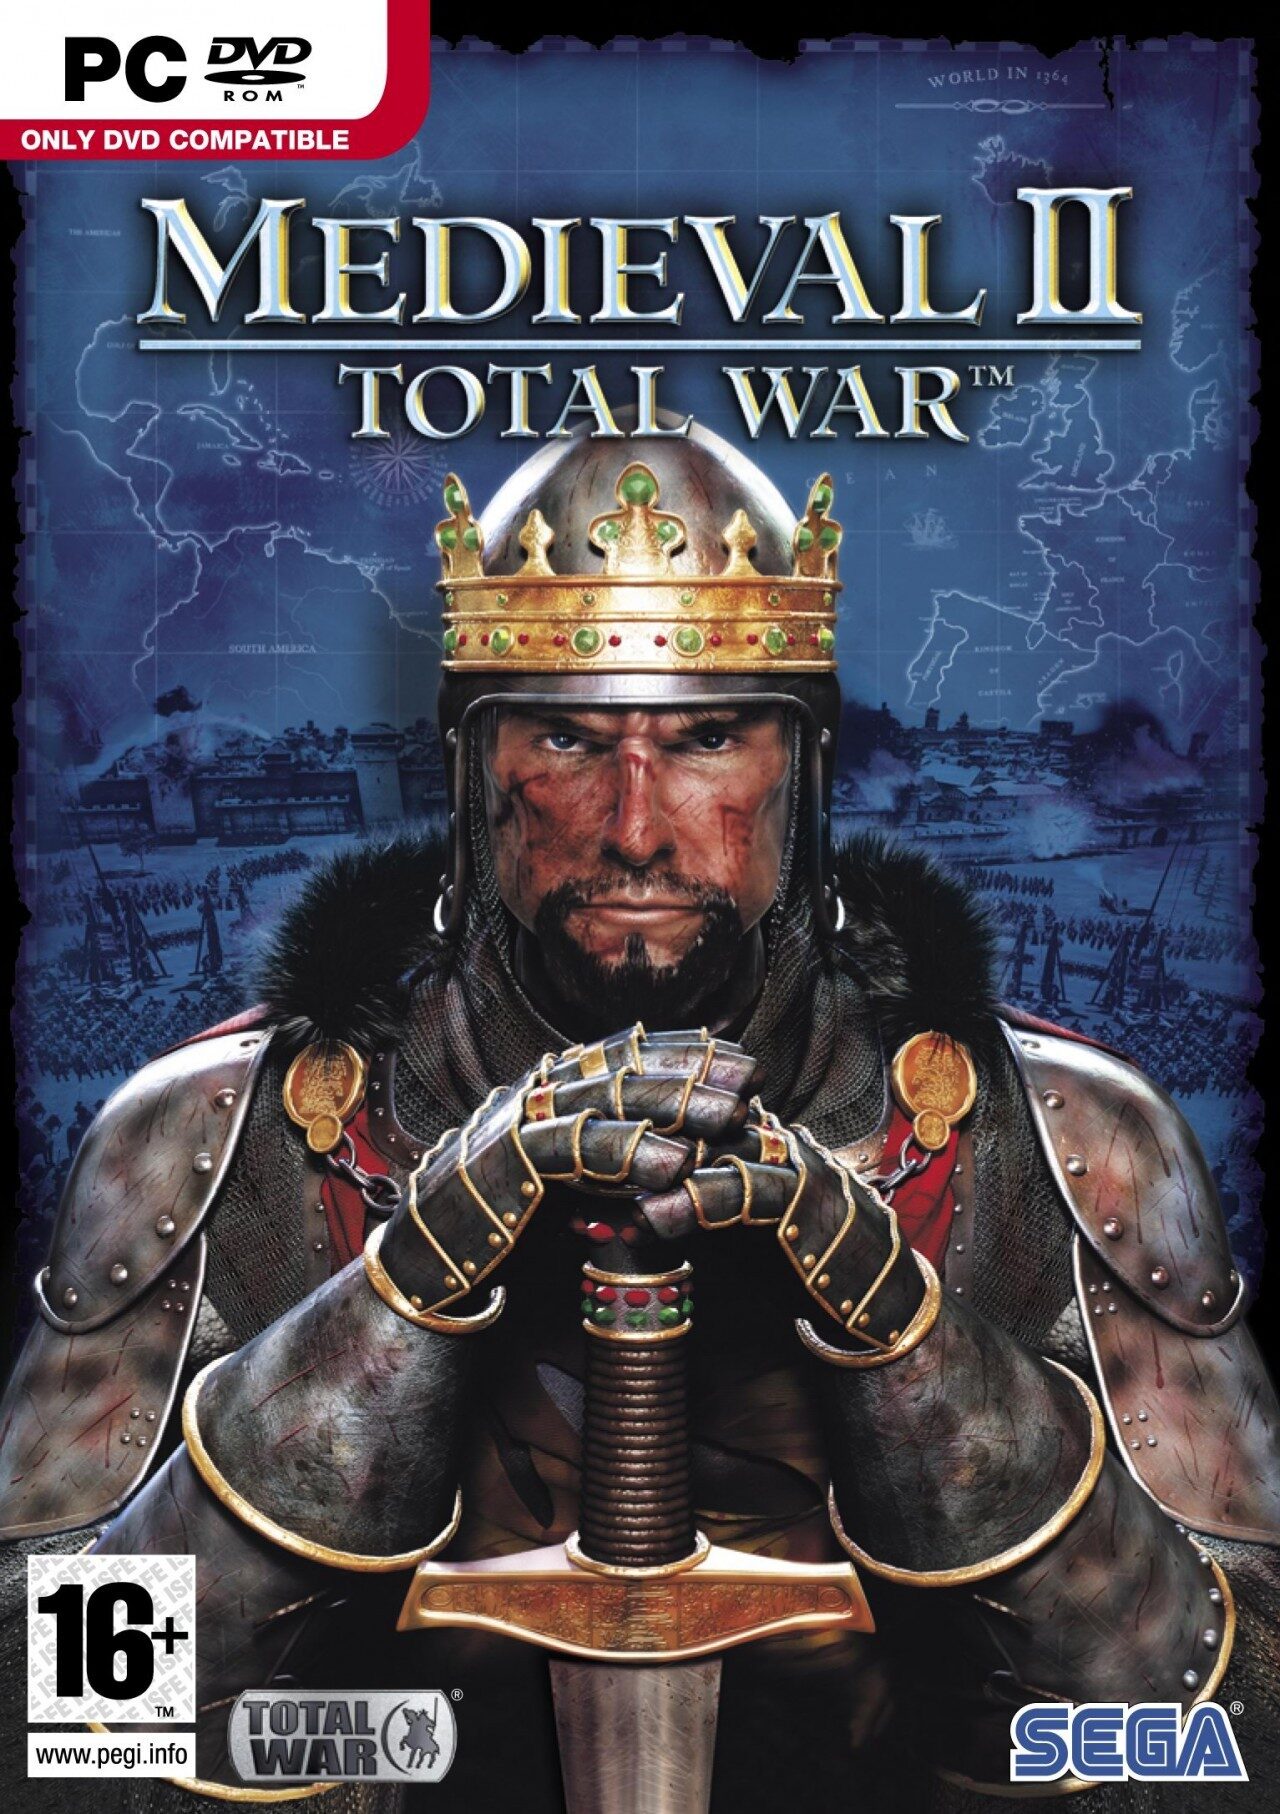 medieval-ii-total-war-crack-download-cover-6807837